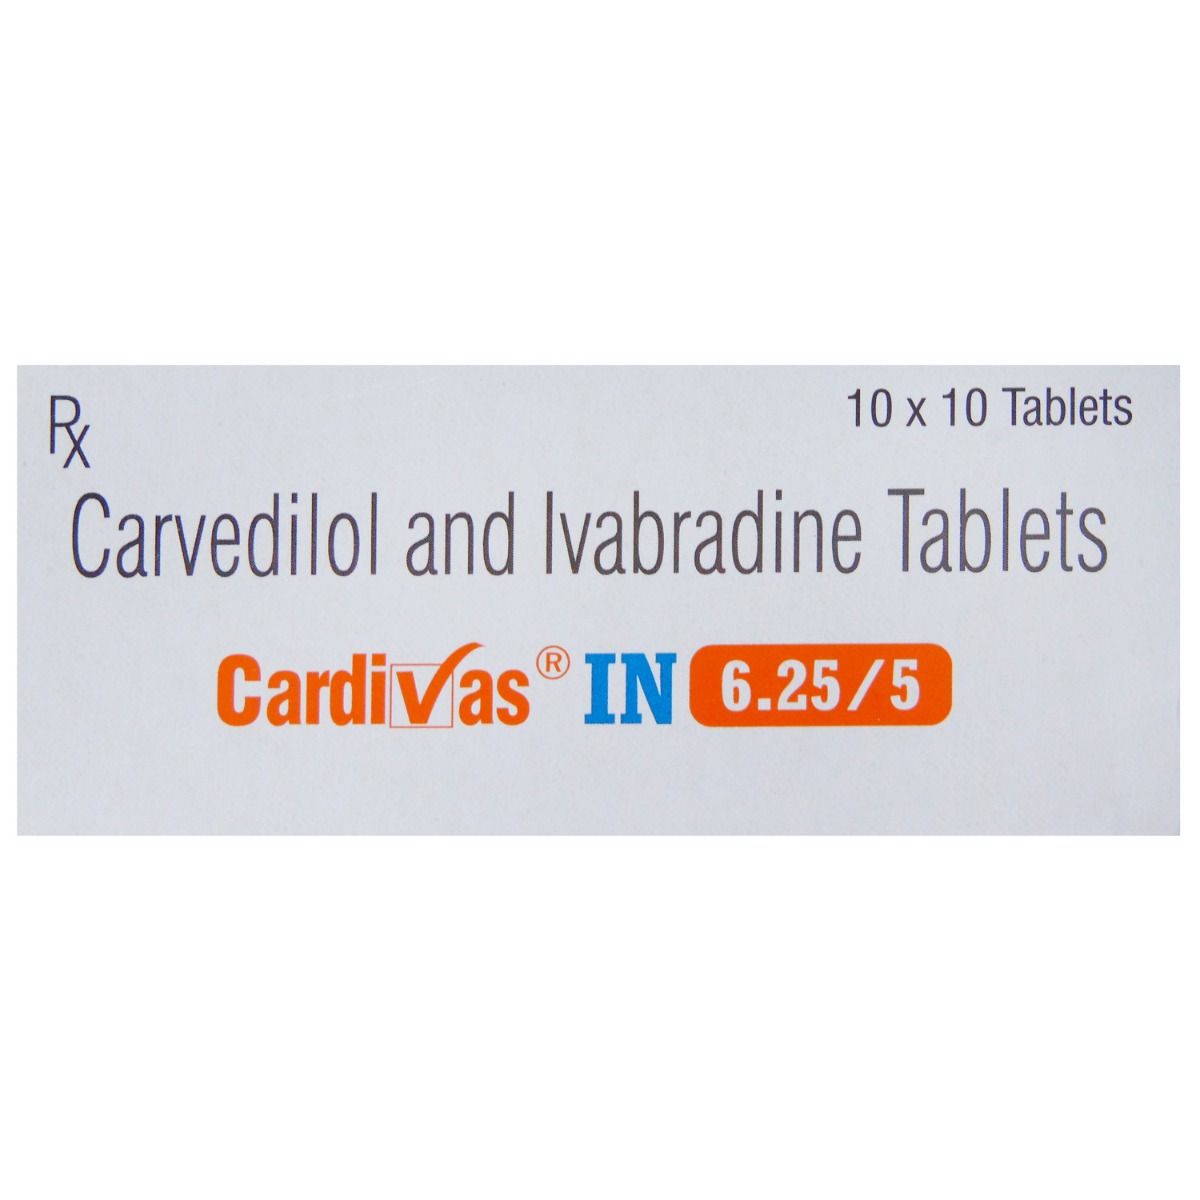 Buy Cardivas IN 6.25/5 Tablet 10's Online